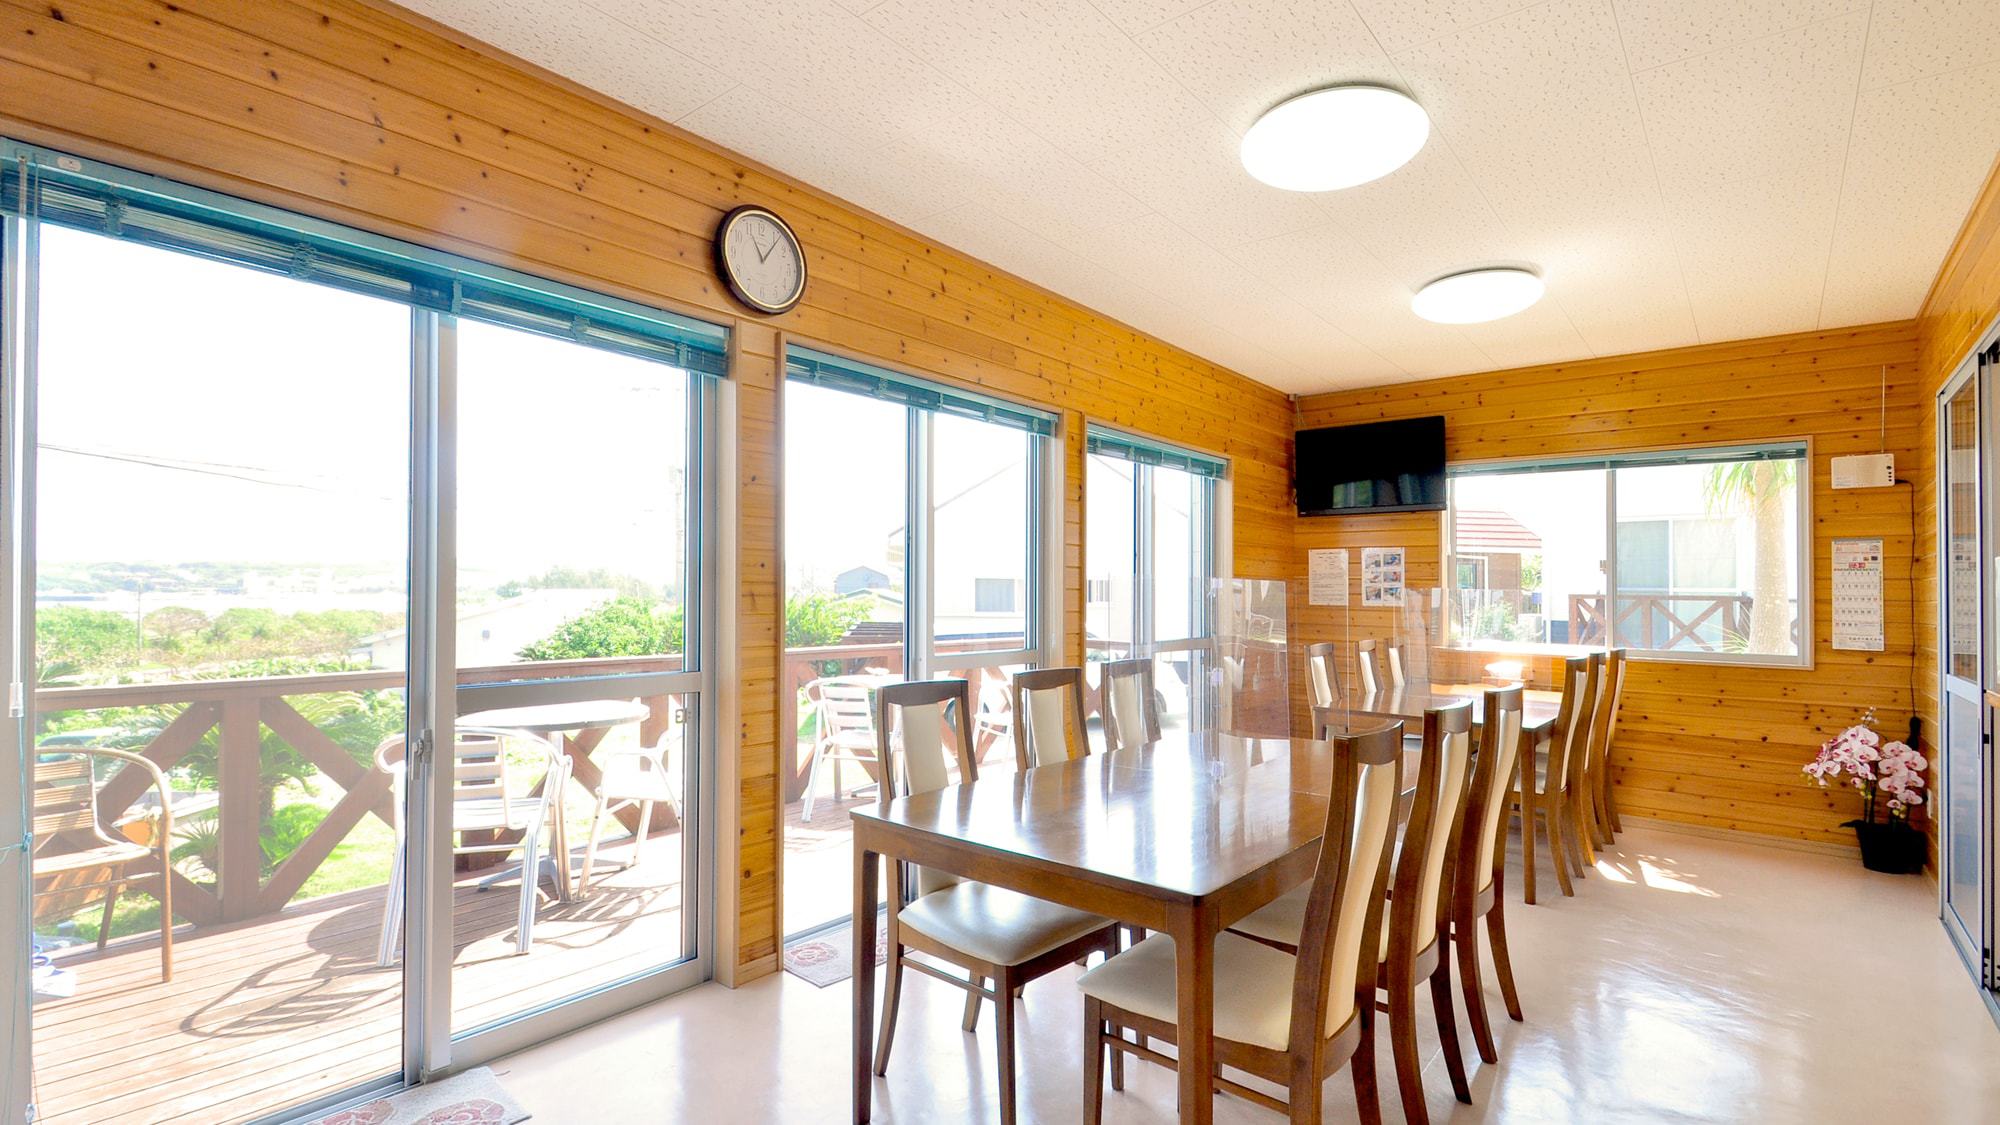 【フロント棟】朝食会場はこちら。大窓が並ぶ採光の良い空間でお食事をお楽しみください。